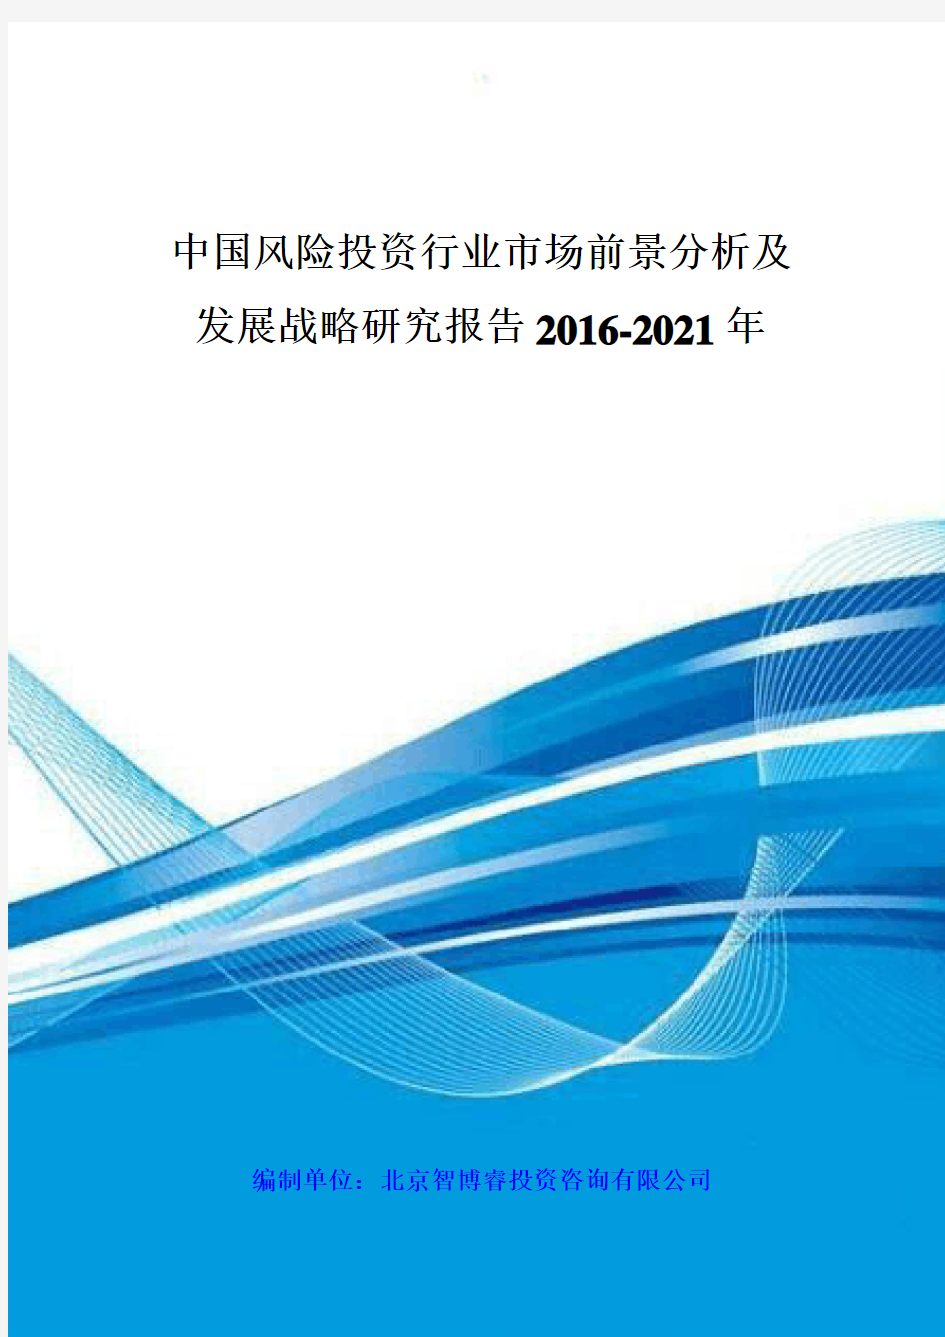 中国风险投资行业市场前景分析及发展战略研究报告 